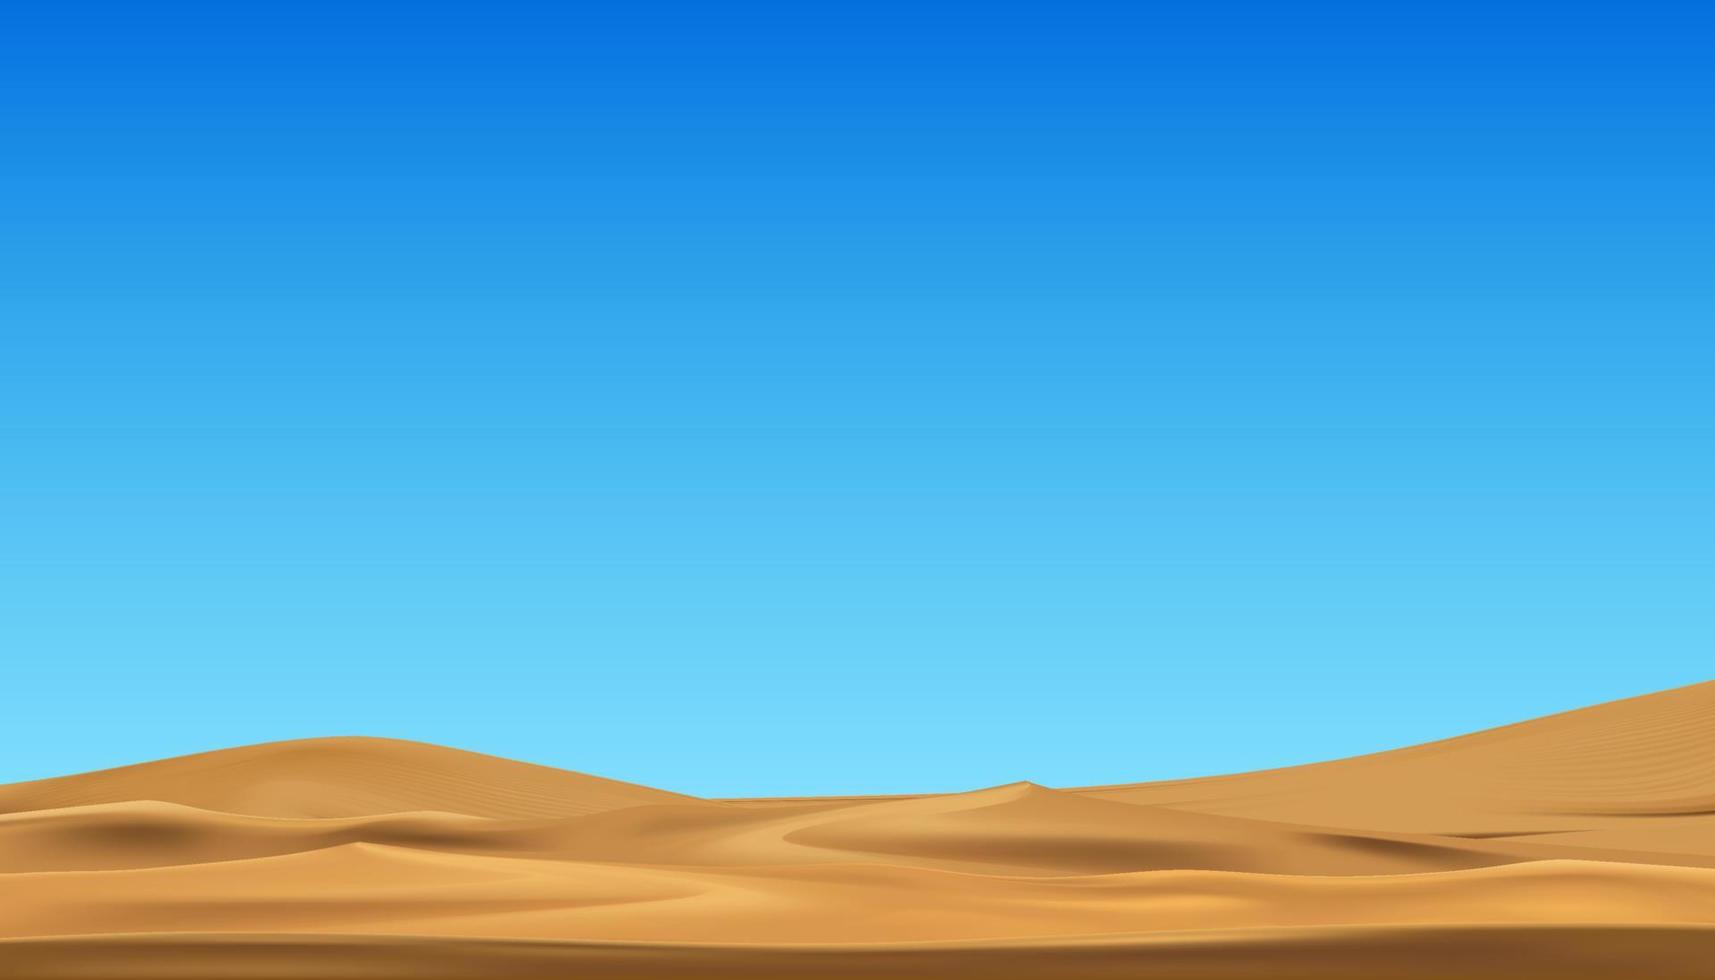 le sable plage avec bleu ciel par le mer, désert paysage avec d'or le sable dunes en dessous de clair ciel, nature désert dans chaud ensoleillé jour, vecteur horizon panoramique concept pour Voyage sur printemps été Contexte